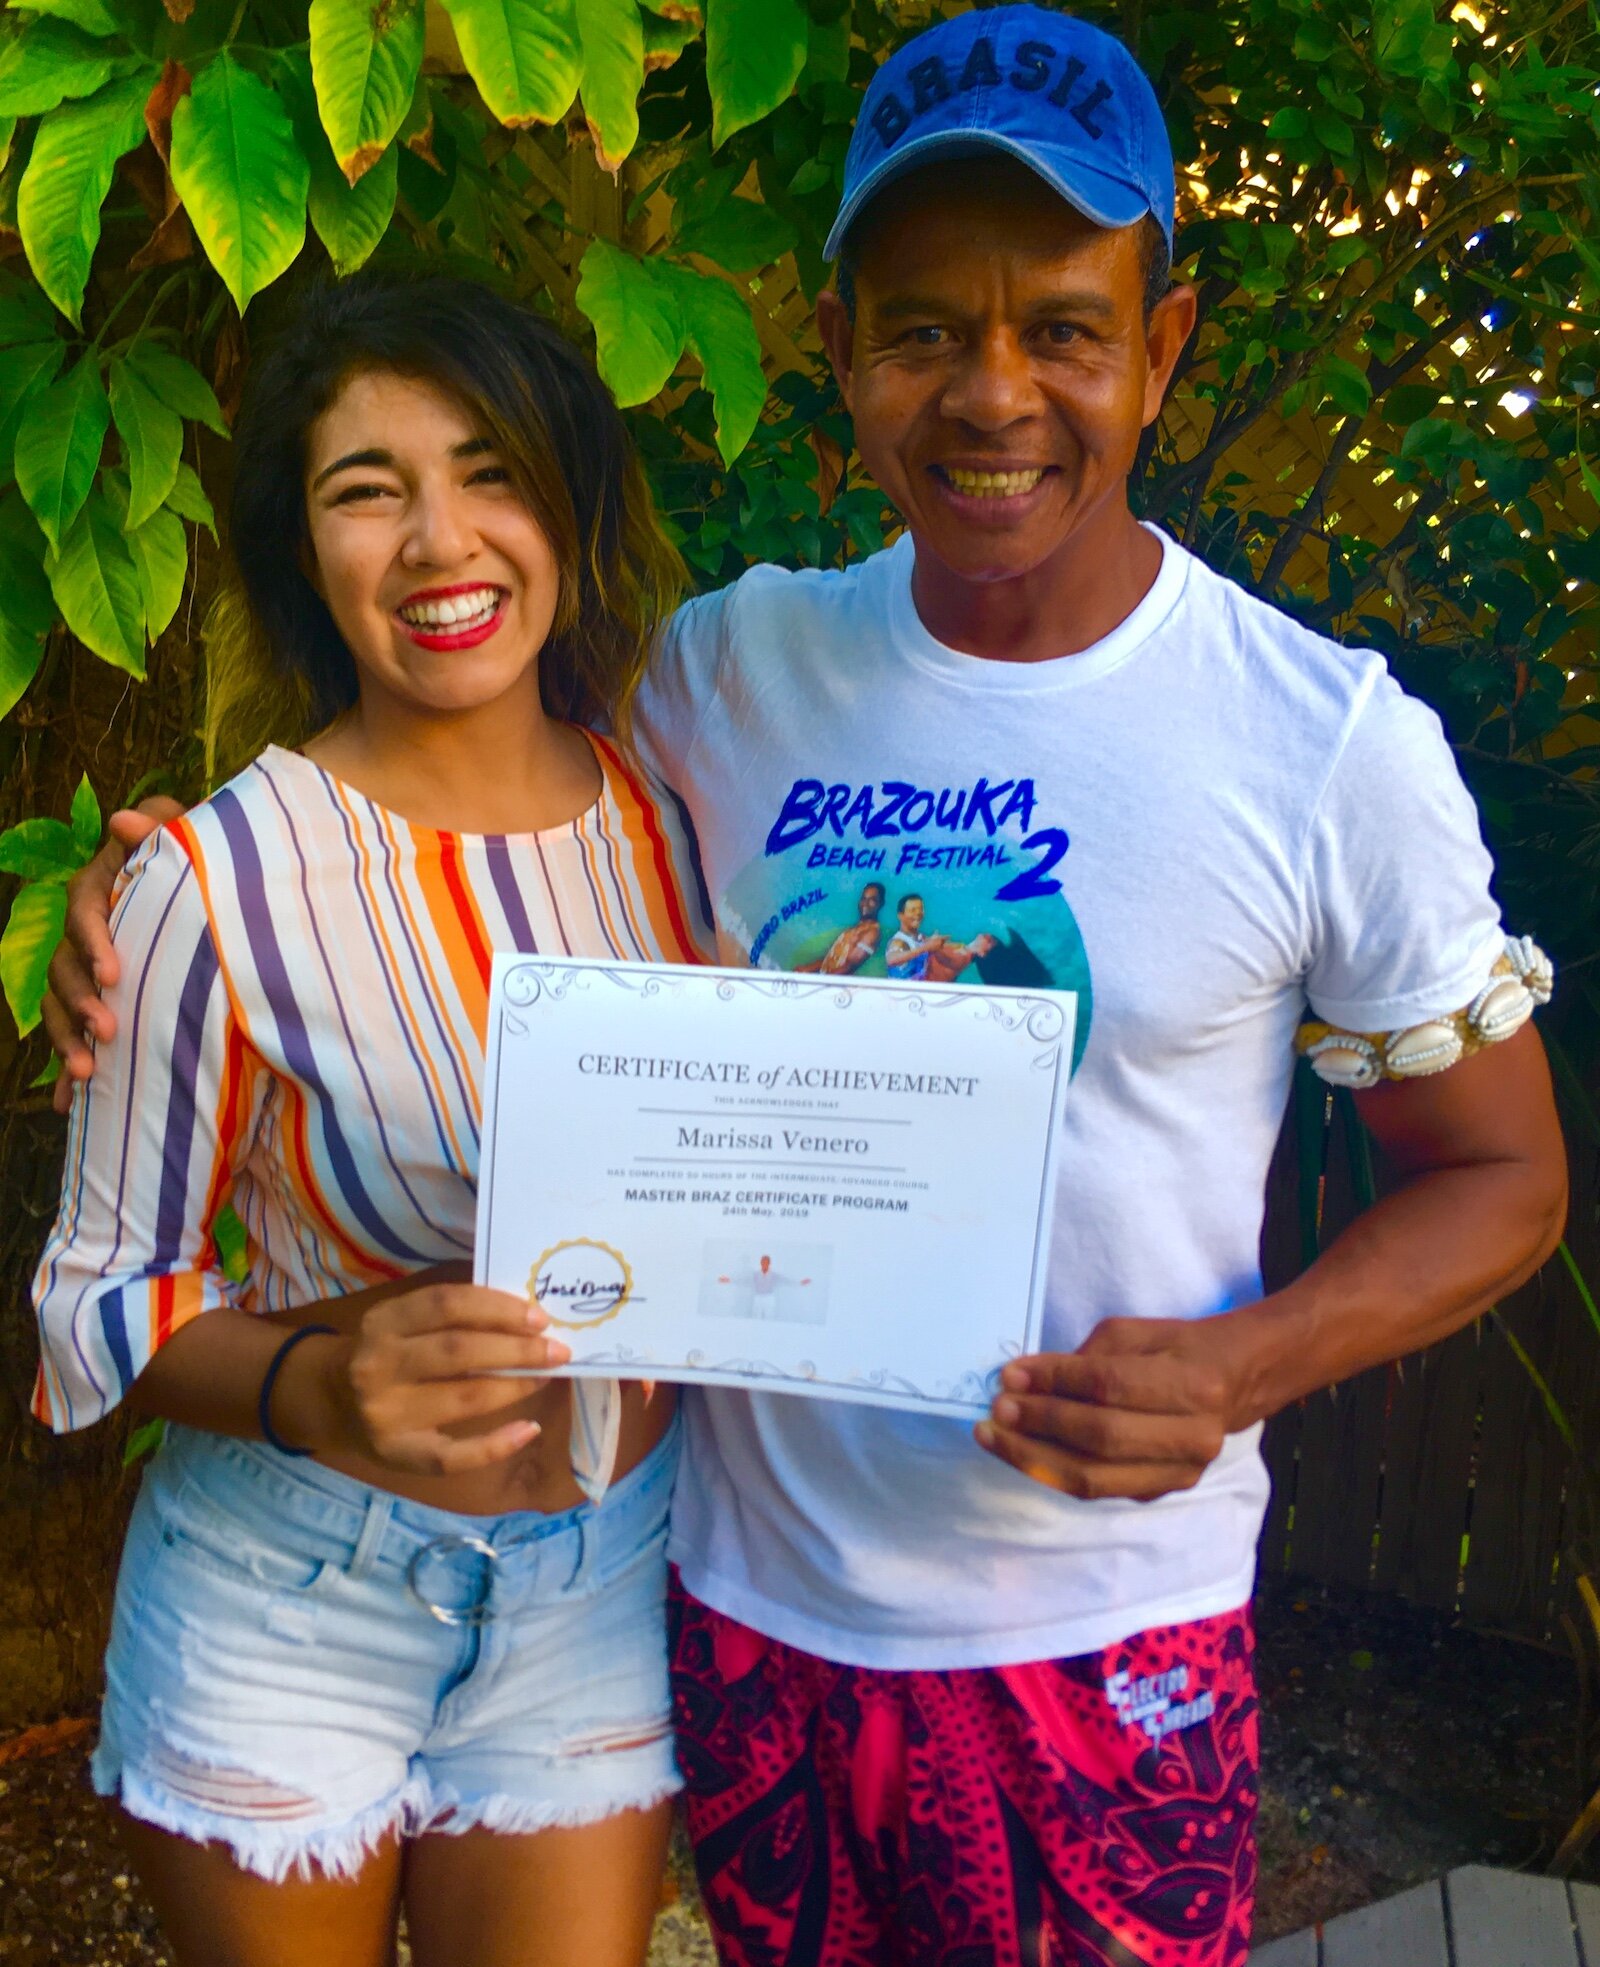 Marissa Venero Completes Master Braz Certificate Course